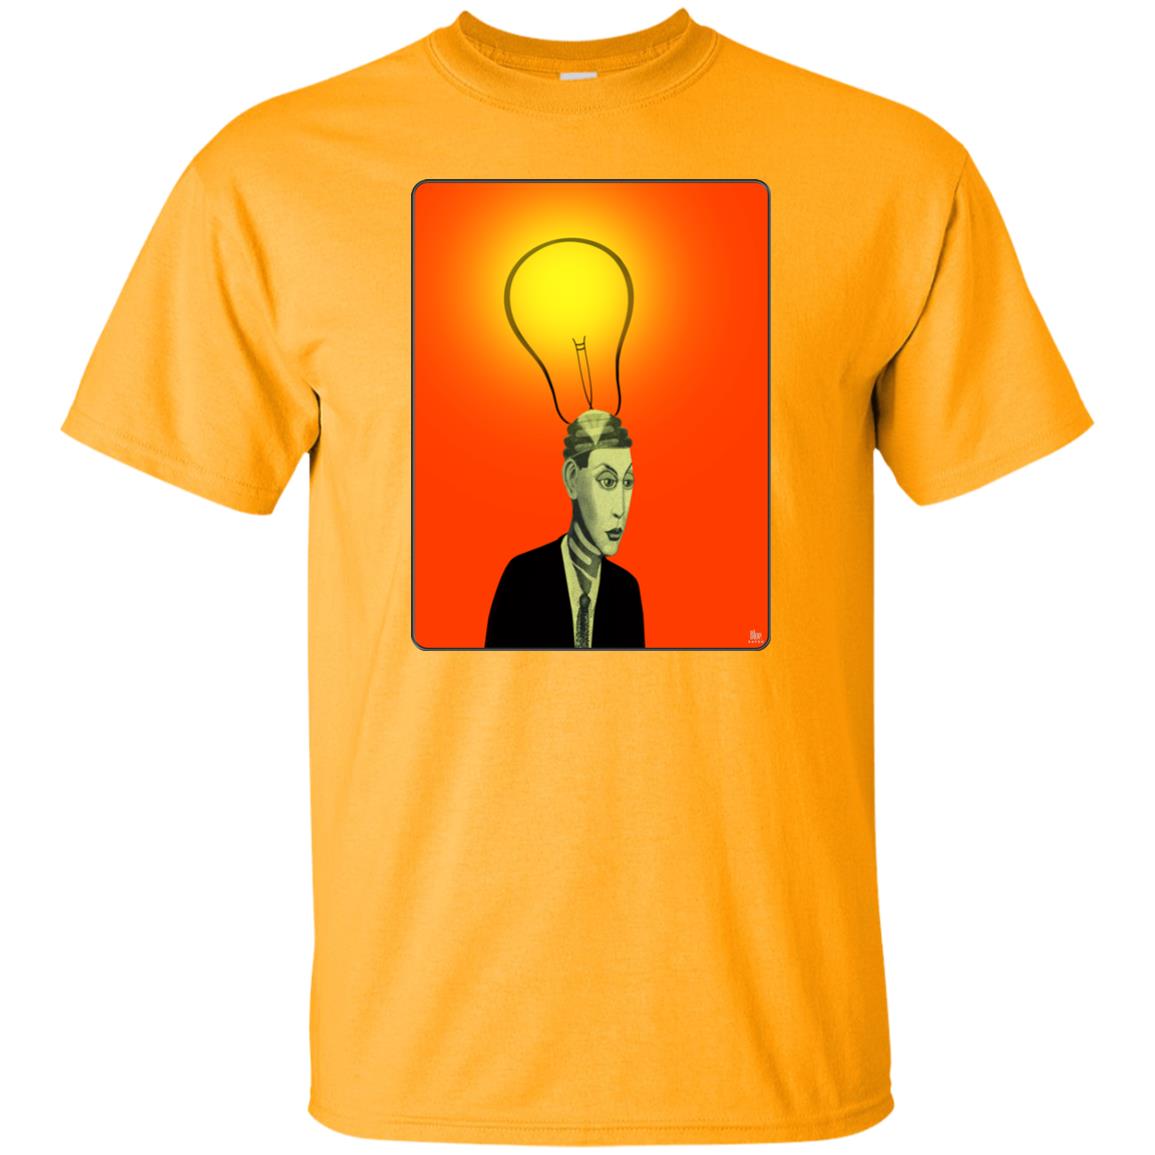 BRIGHT IDEA - Men's Classic Fit T-Shirt